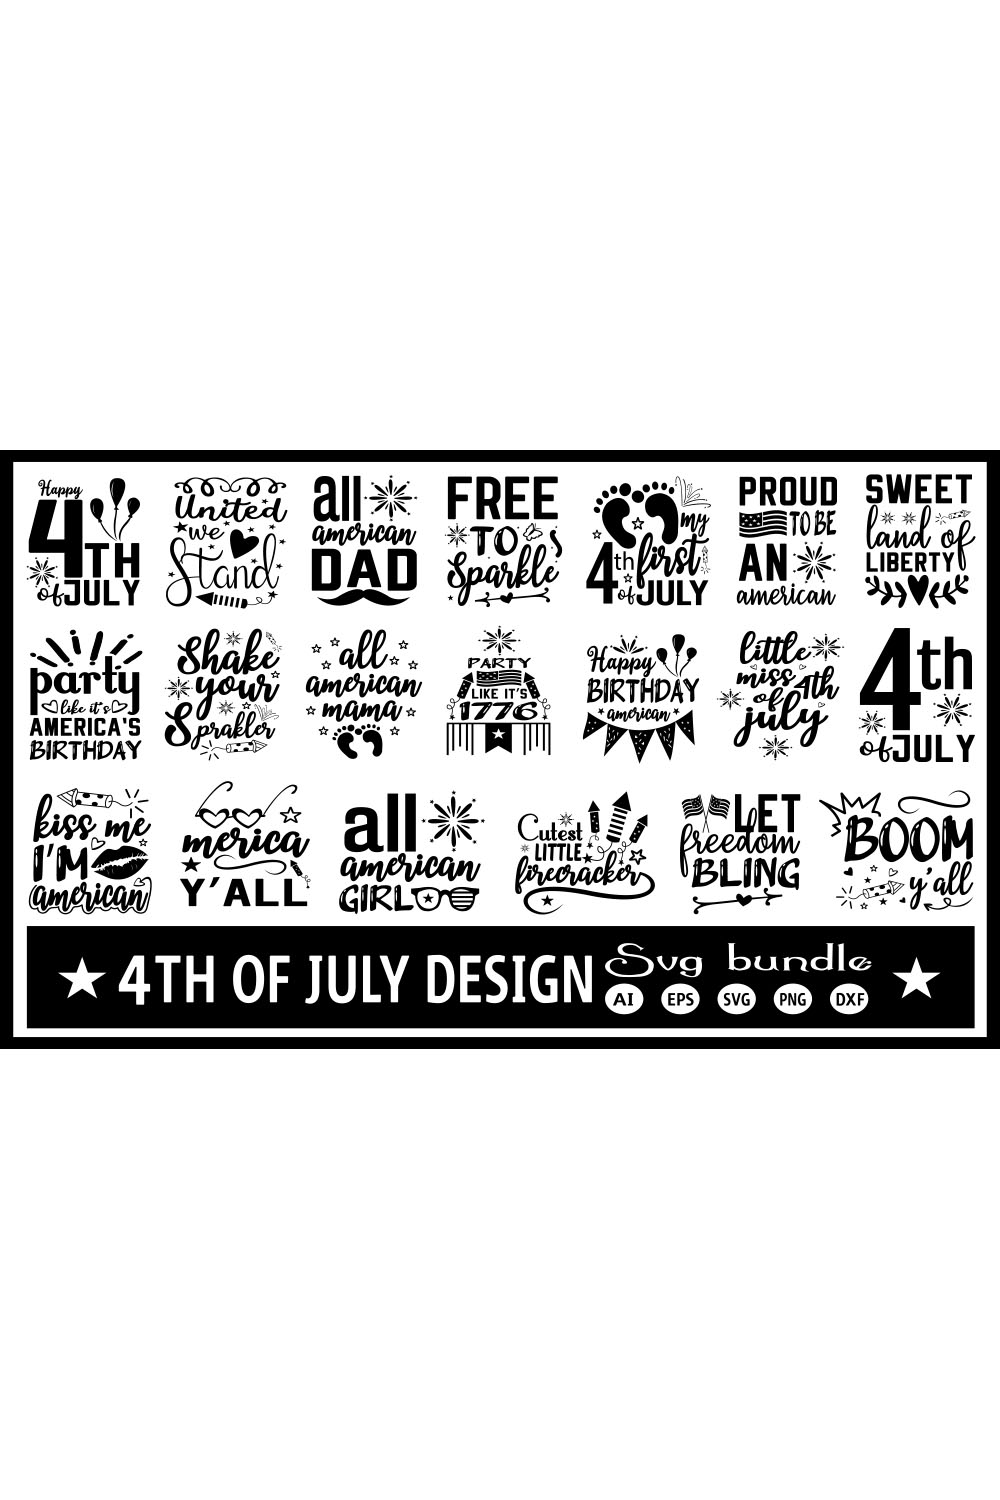 Fourth of July Design SVG Bundle pinterest image.